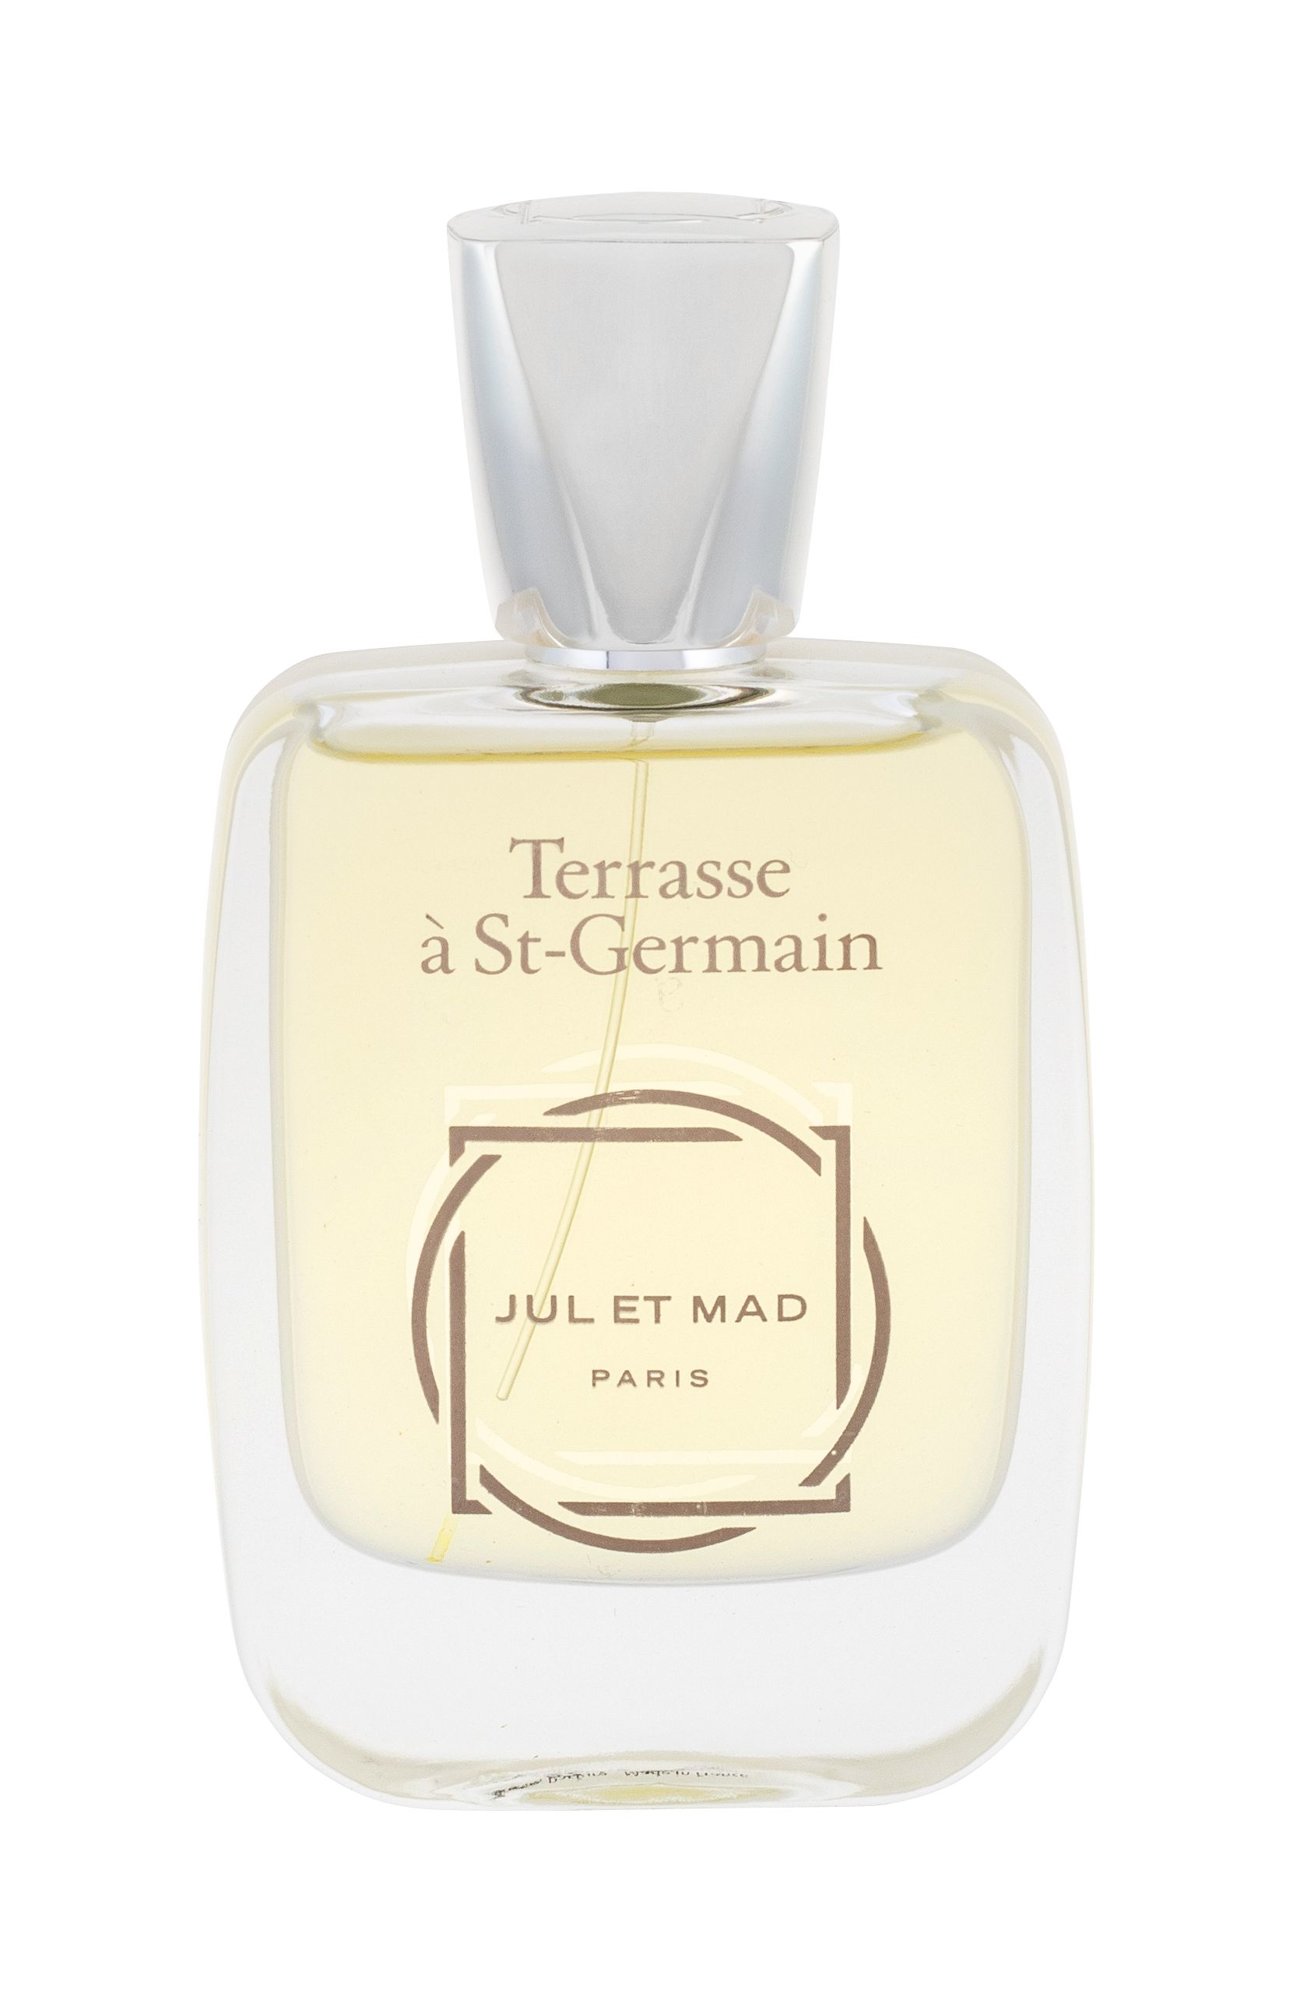 Jul et Mad Paris Terrasse a St-Germain 50ml NIŠINIAI Kvepalai Unisex Parfum